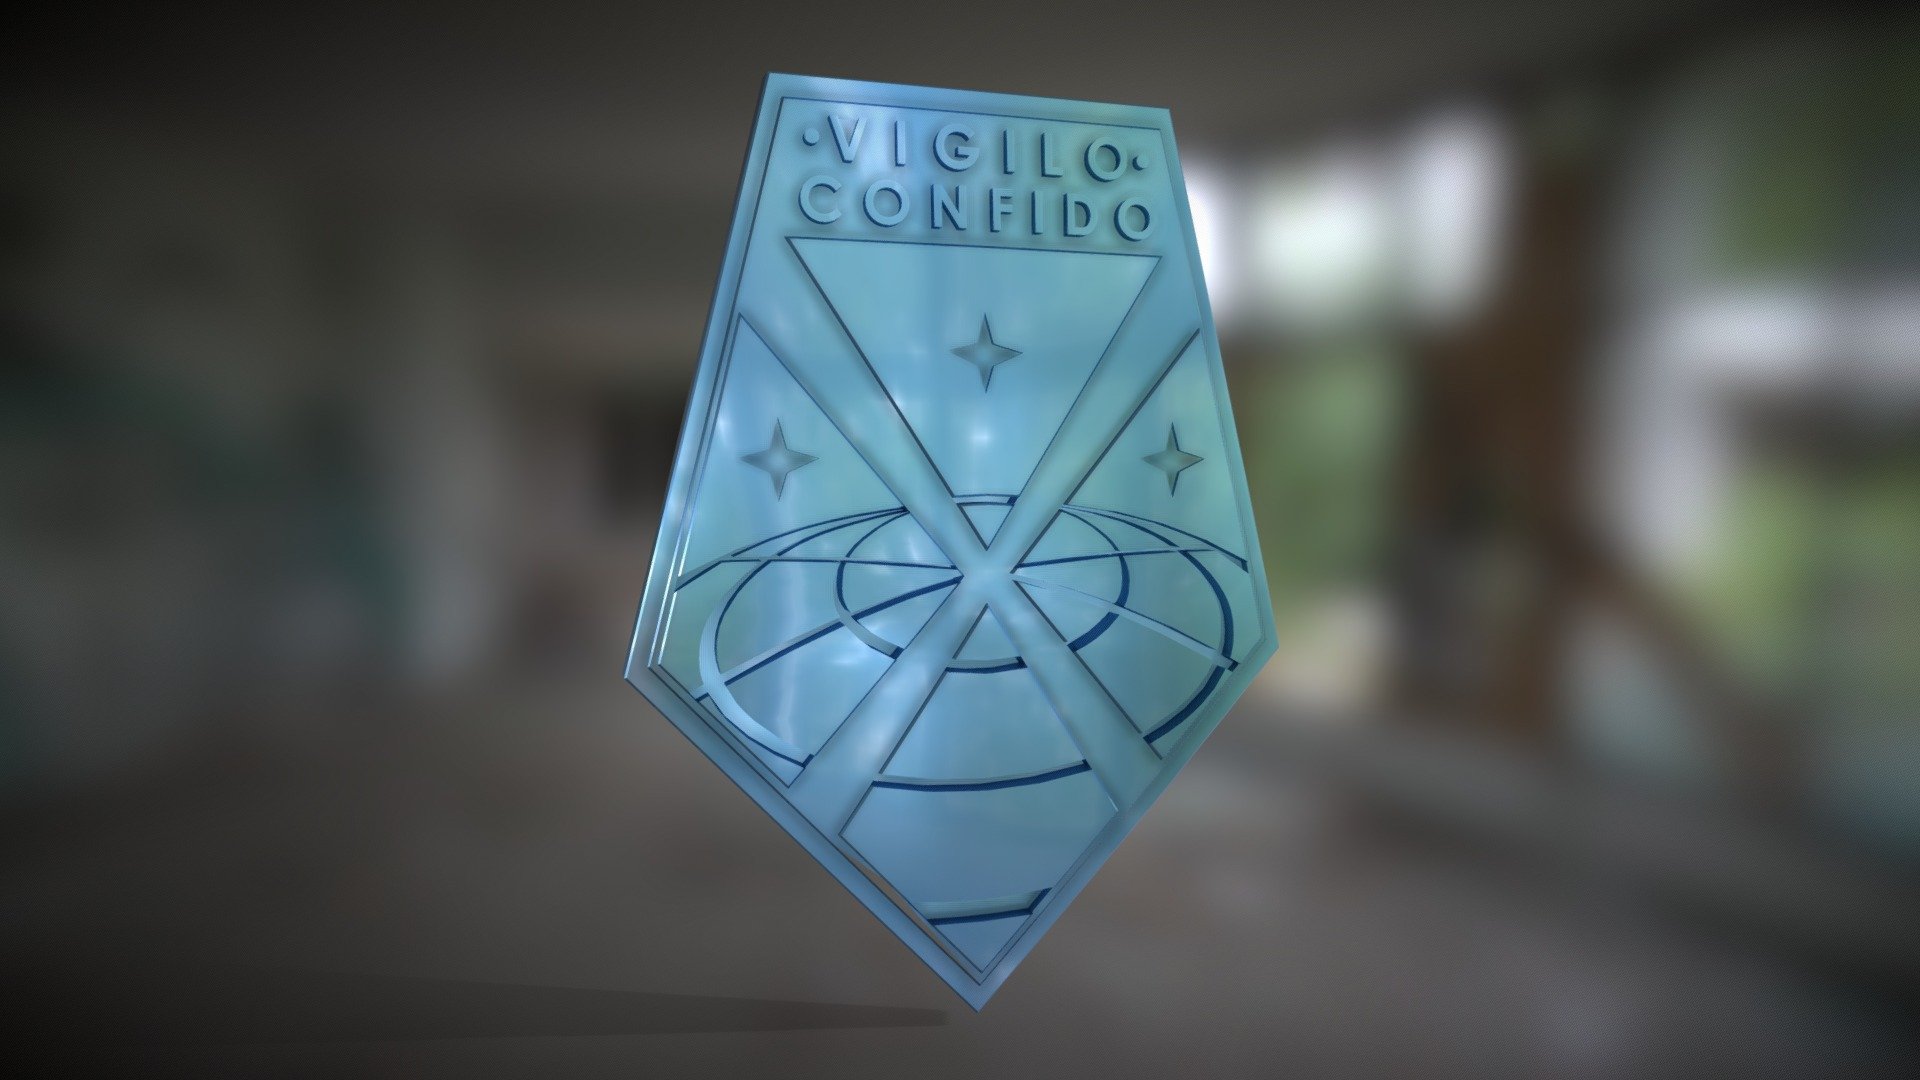 XCOM Badge Vigilo Confido